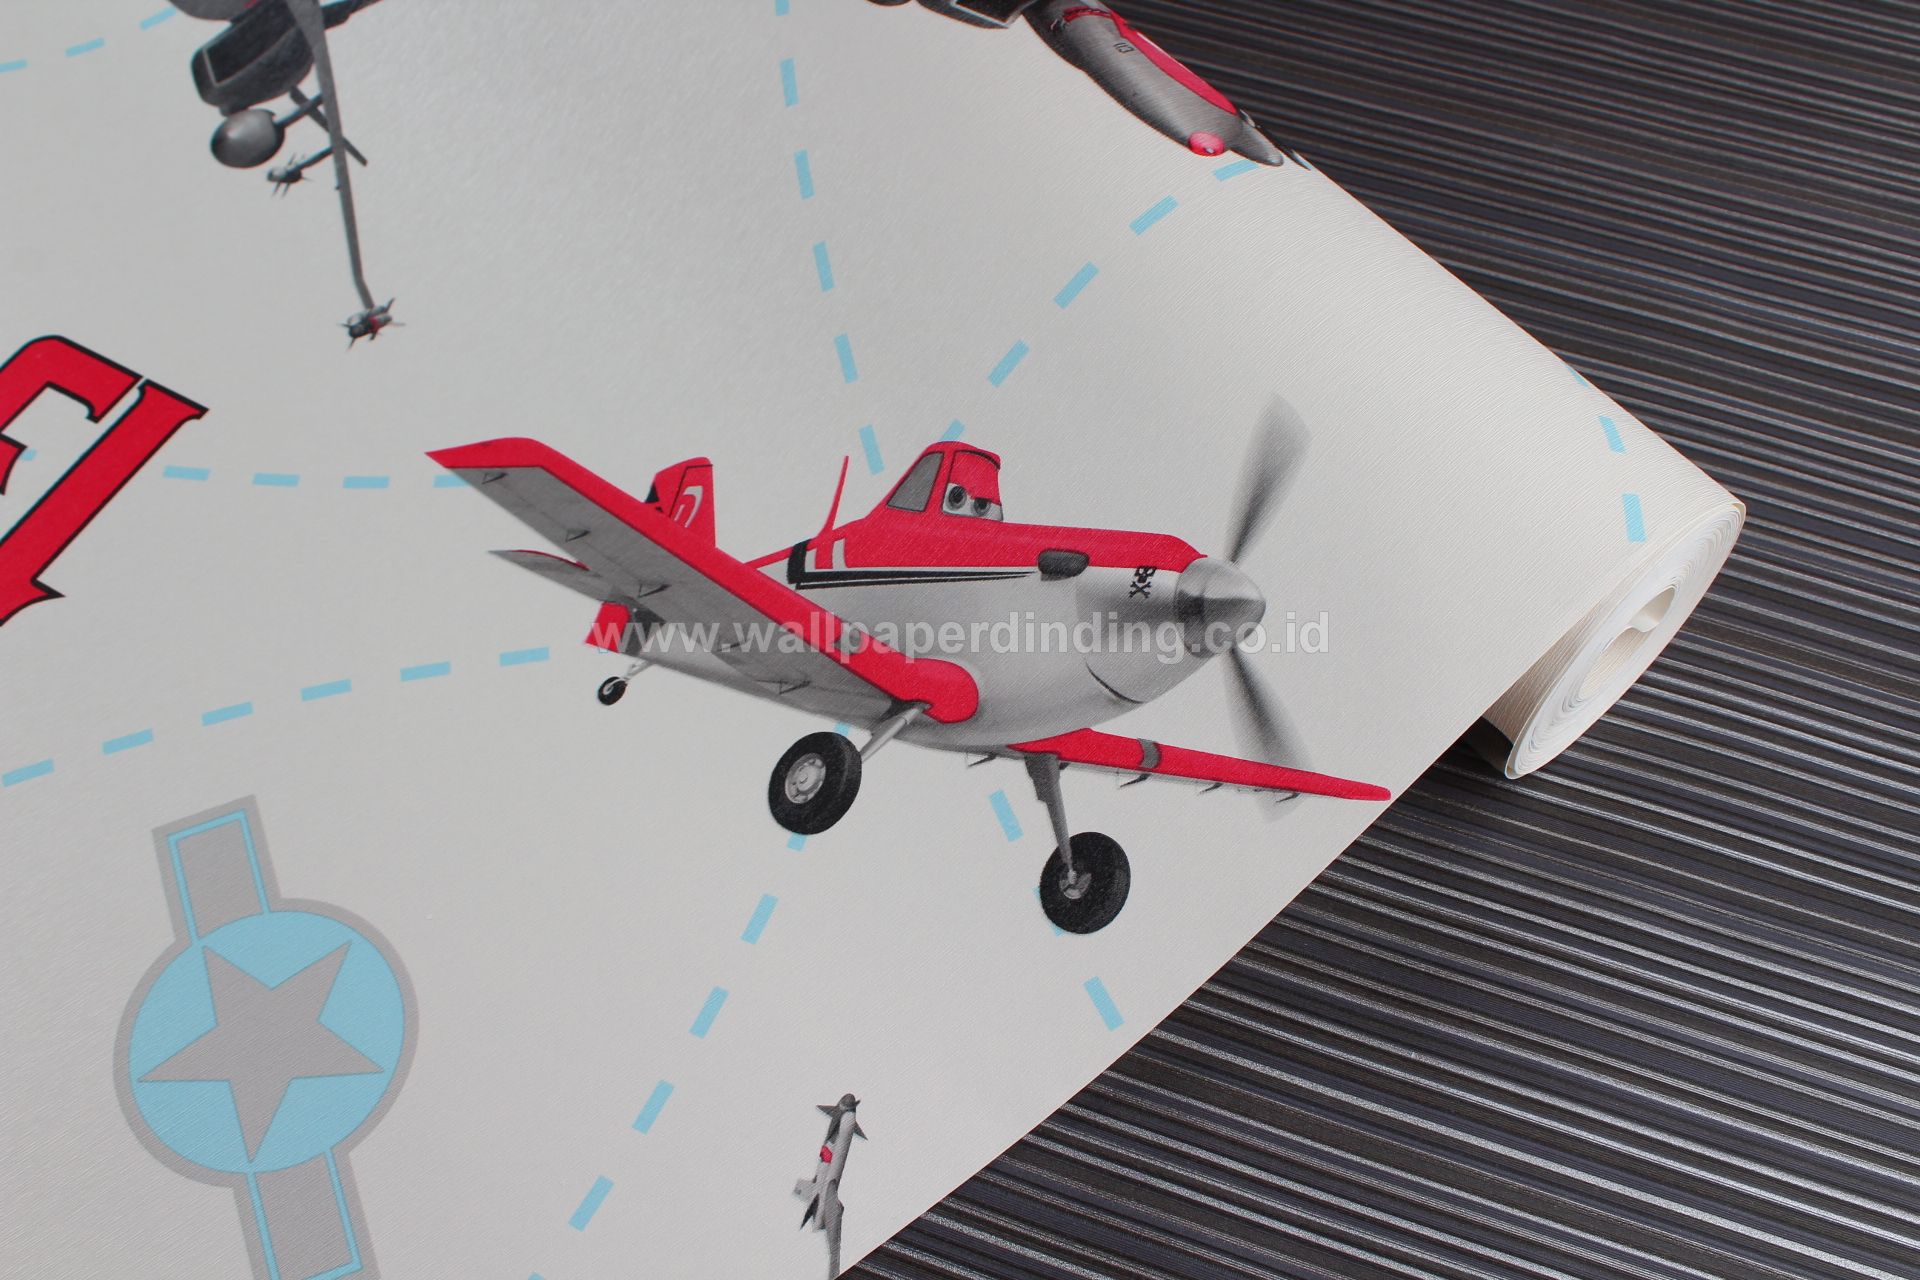 Wallpaper Dinding Anak Pesawat Merah Putih - Dinding Gambar Pesawat - HD Wallpaper 